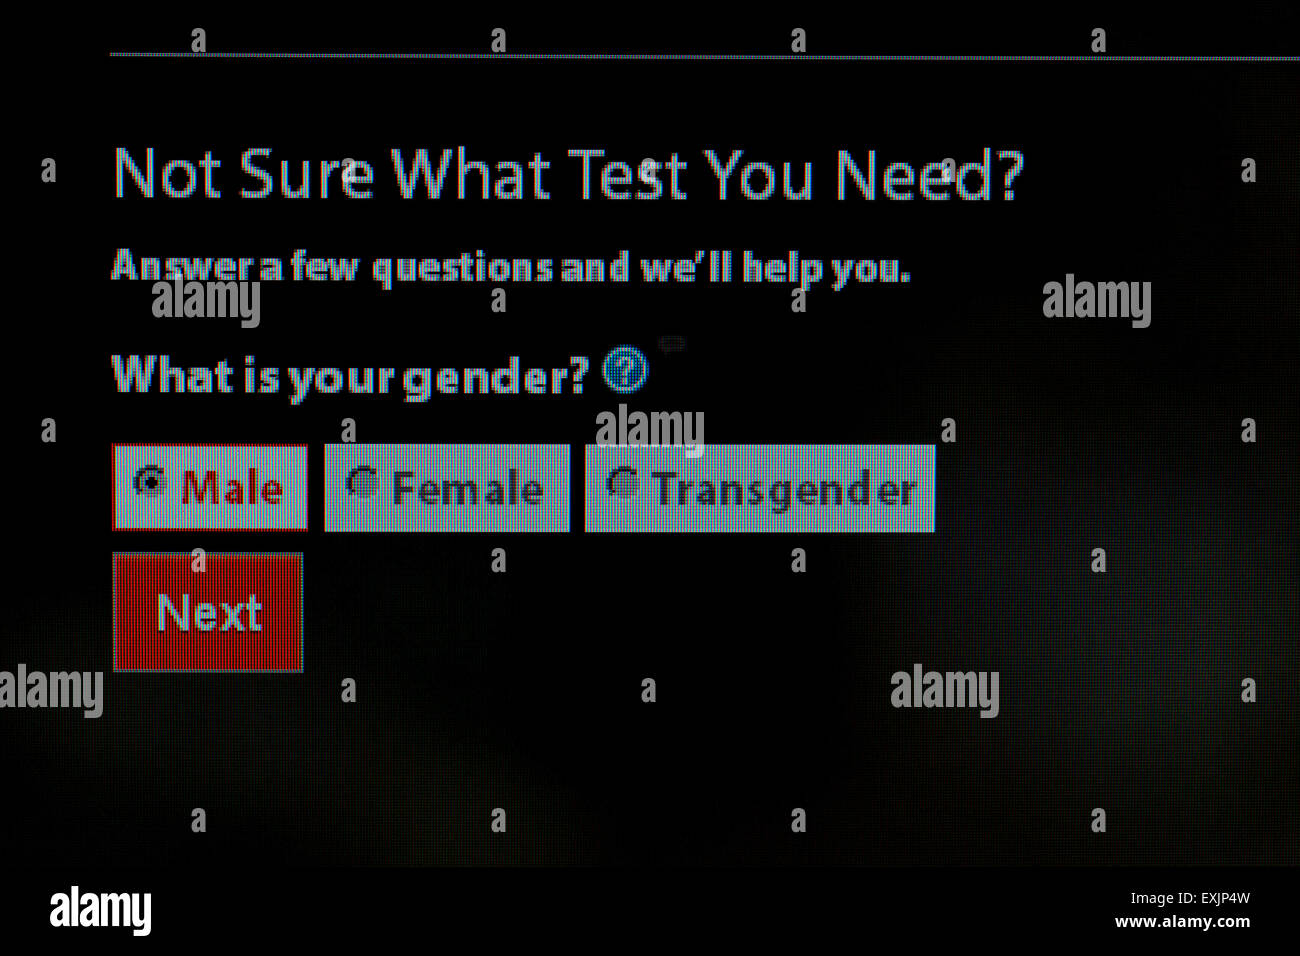 Gender-Auswahl an männliche, weibliche und Transgender auf HIV / STD-Tests Informationen über Centers for Disease Control Stockfoto